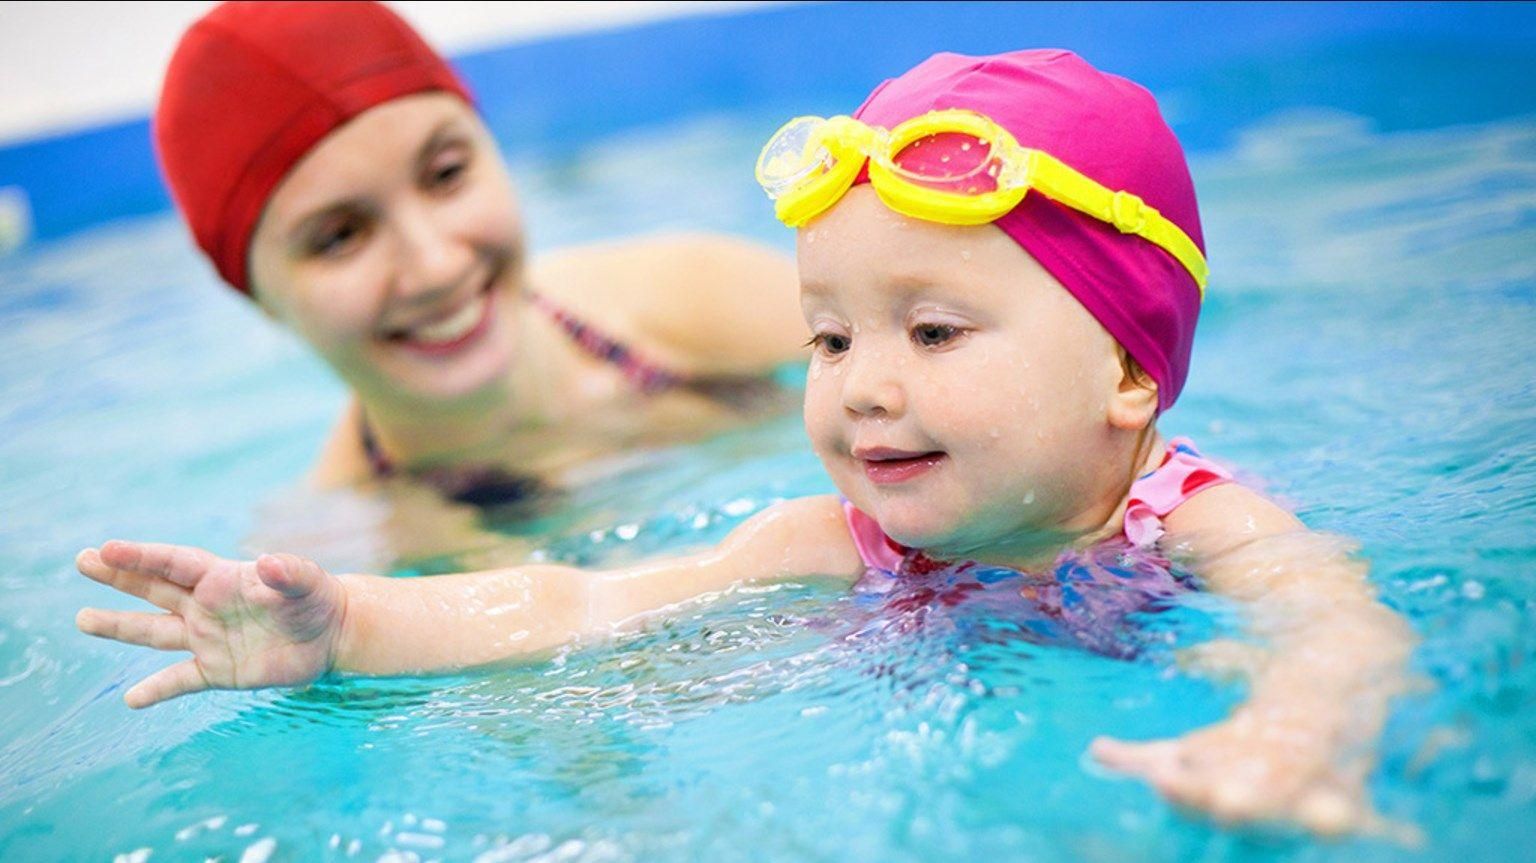 Як навчити дитину плавати